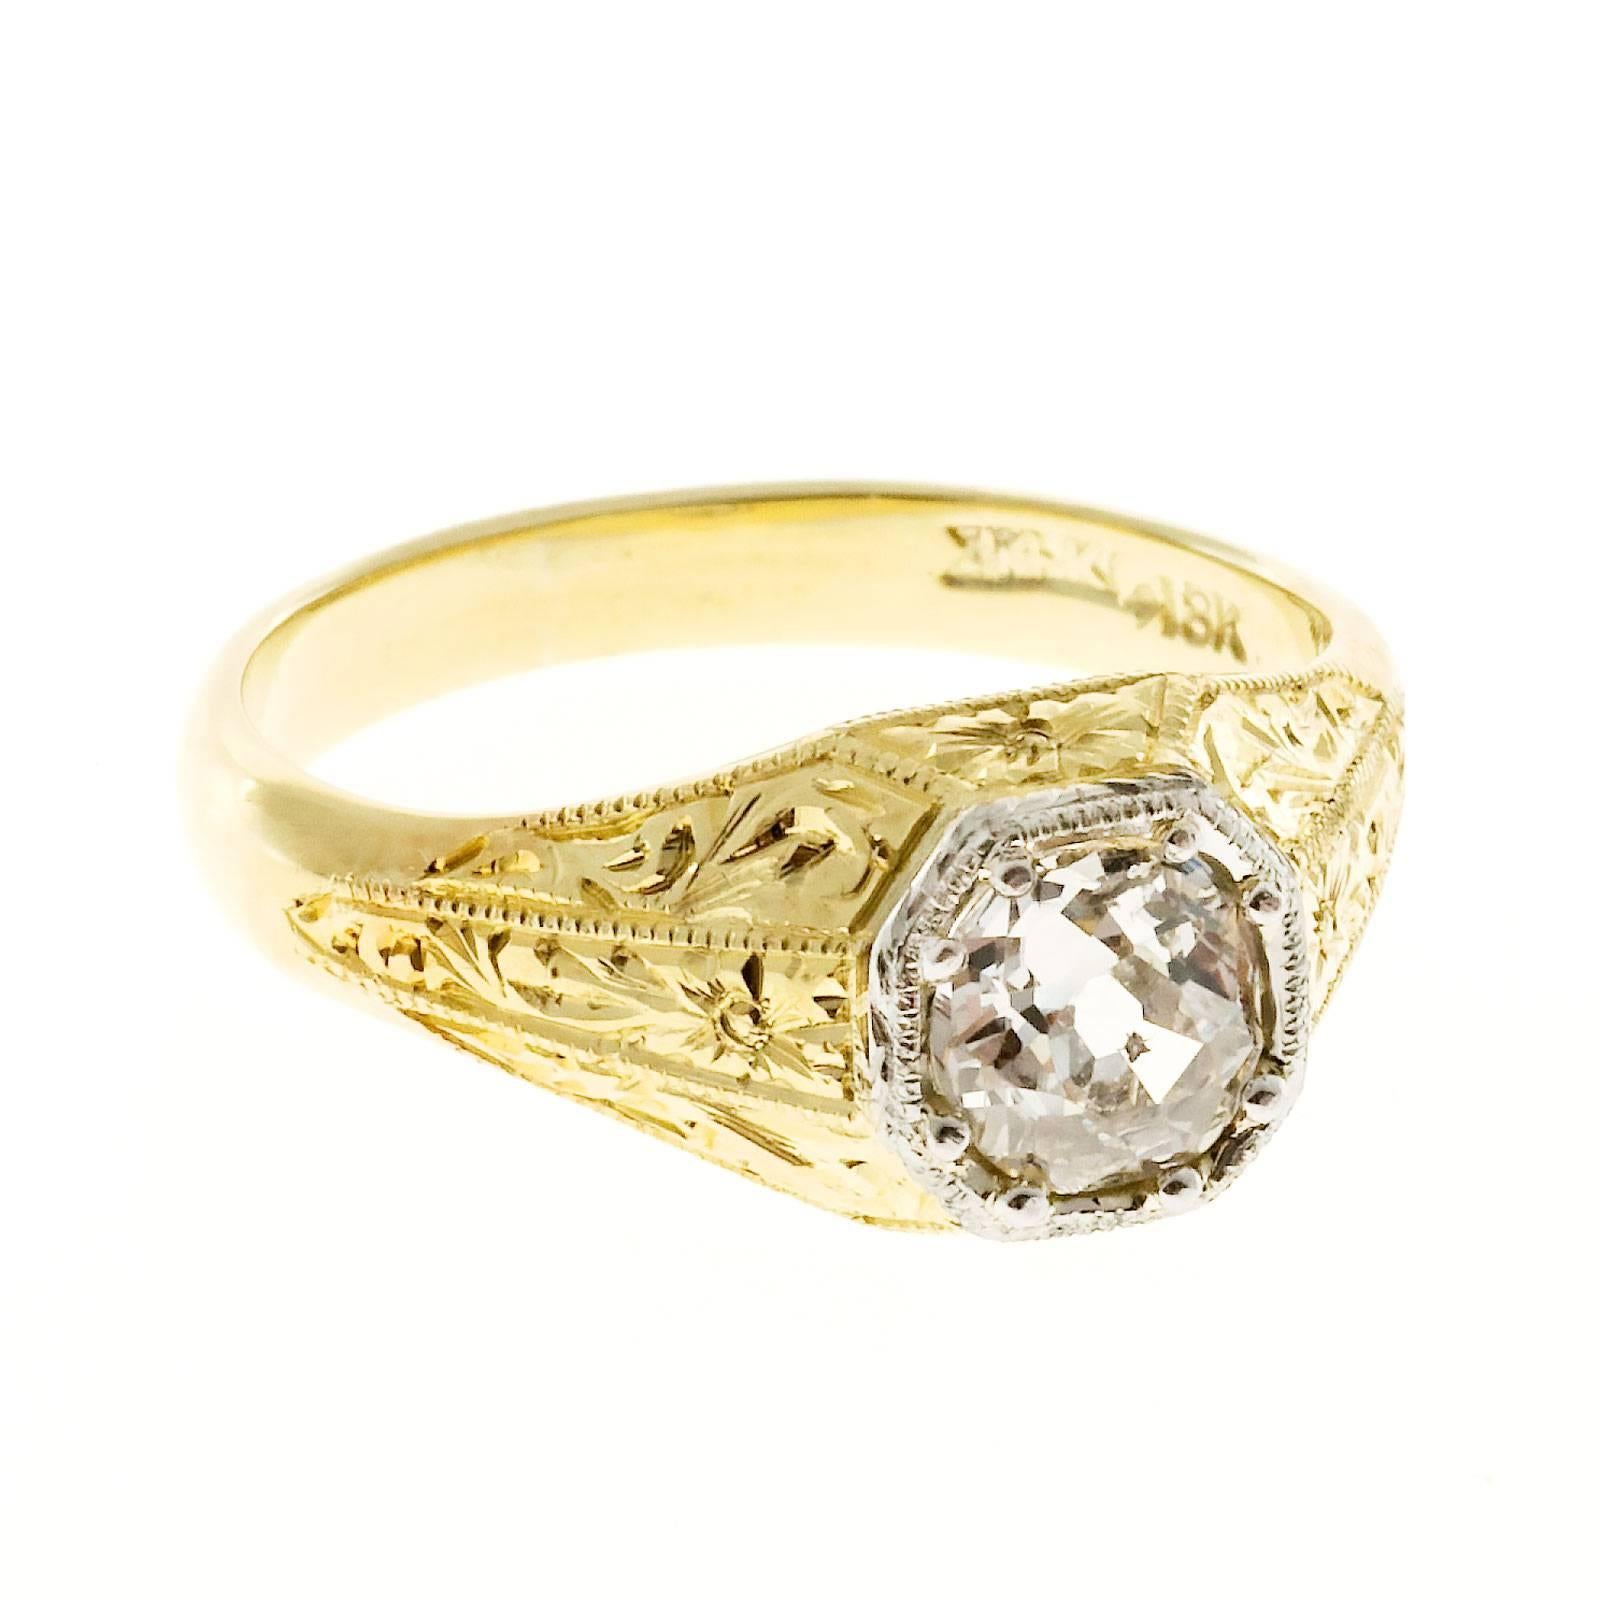 Handmade Men’s Diamond Gold Engraved Ring 1